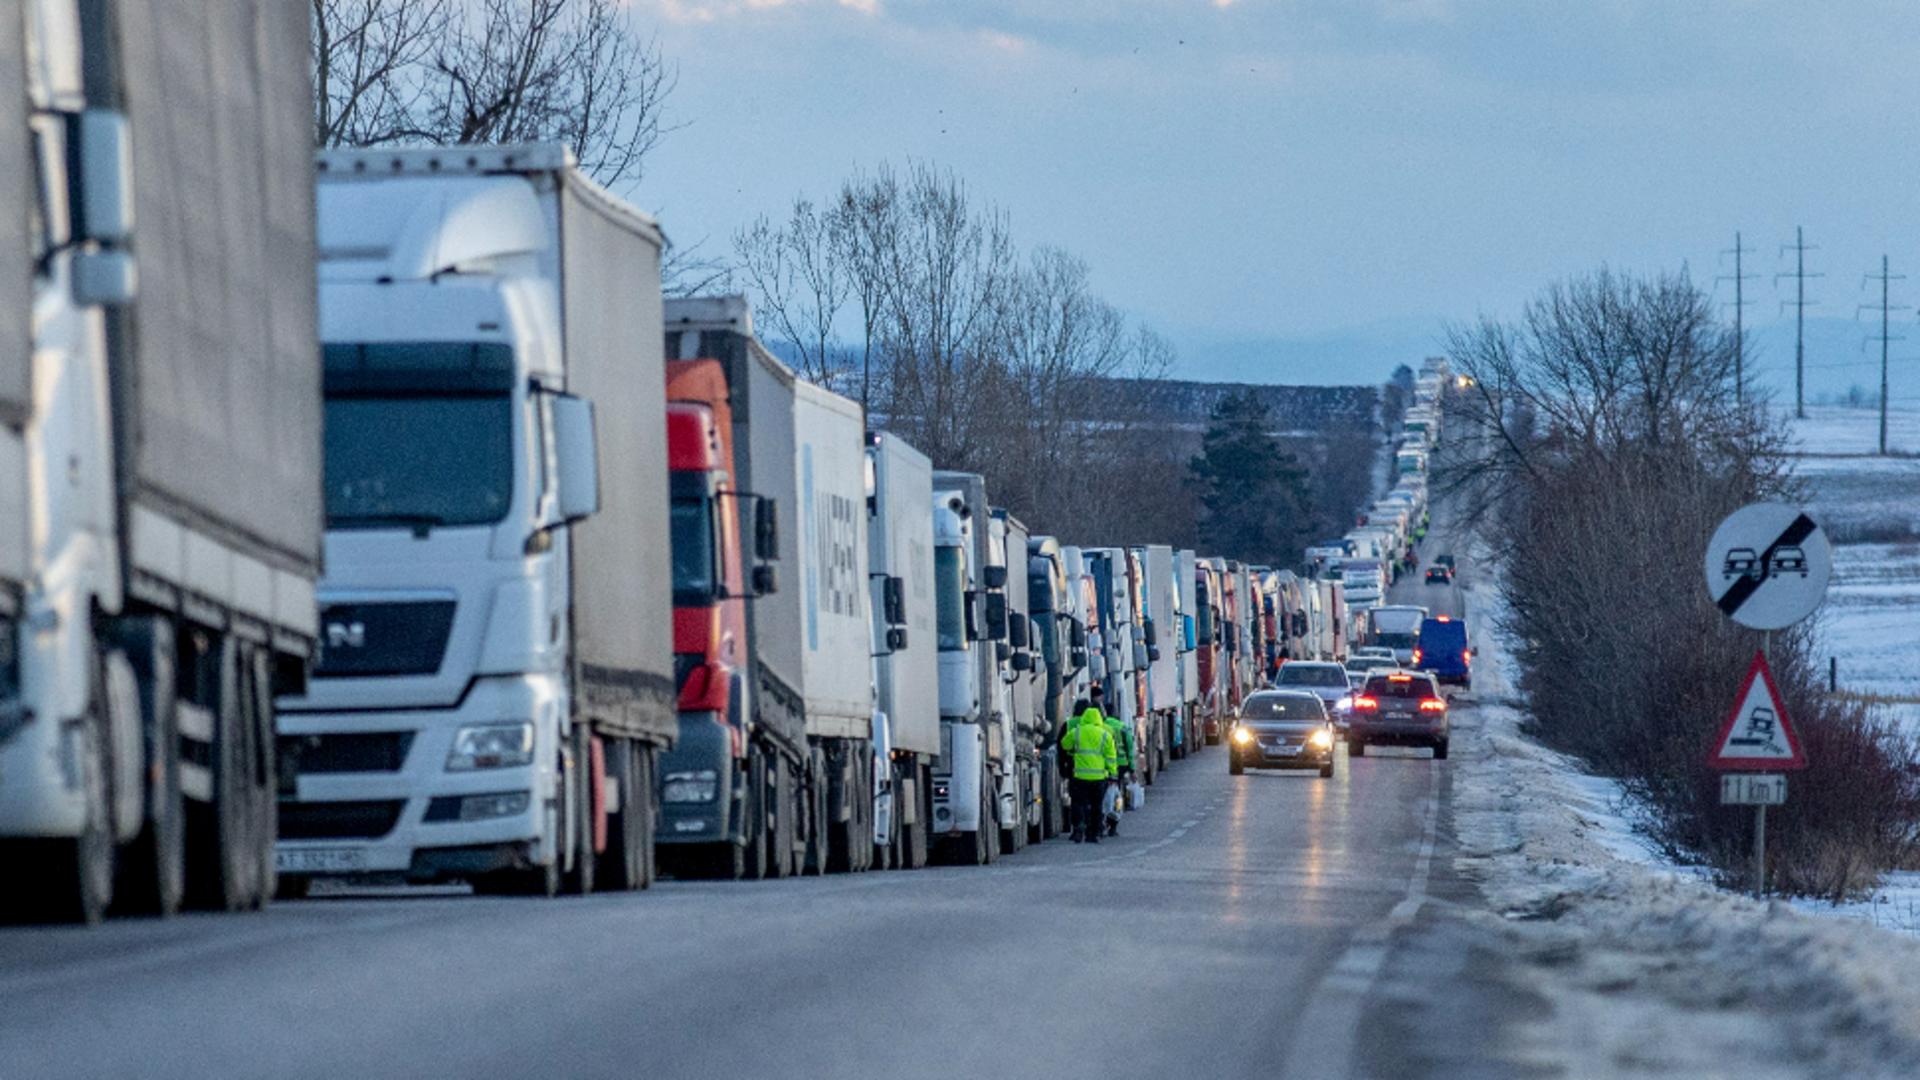 Protest transportatori și fermieri de la Vama Siret și din Afumati, Ilfov/ Inquam Photos, George Călin